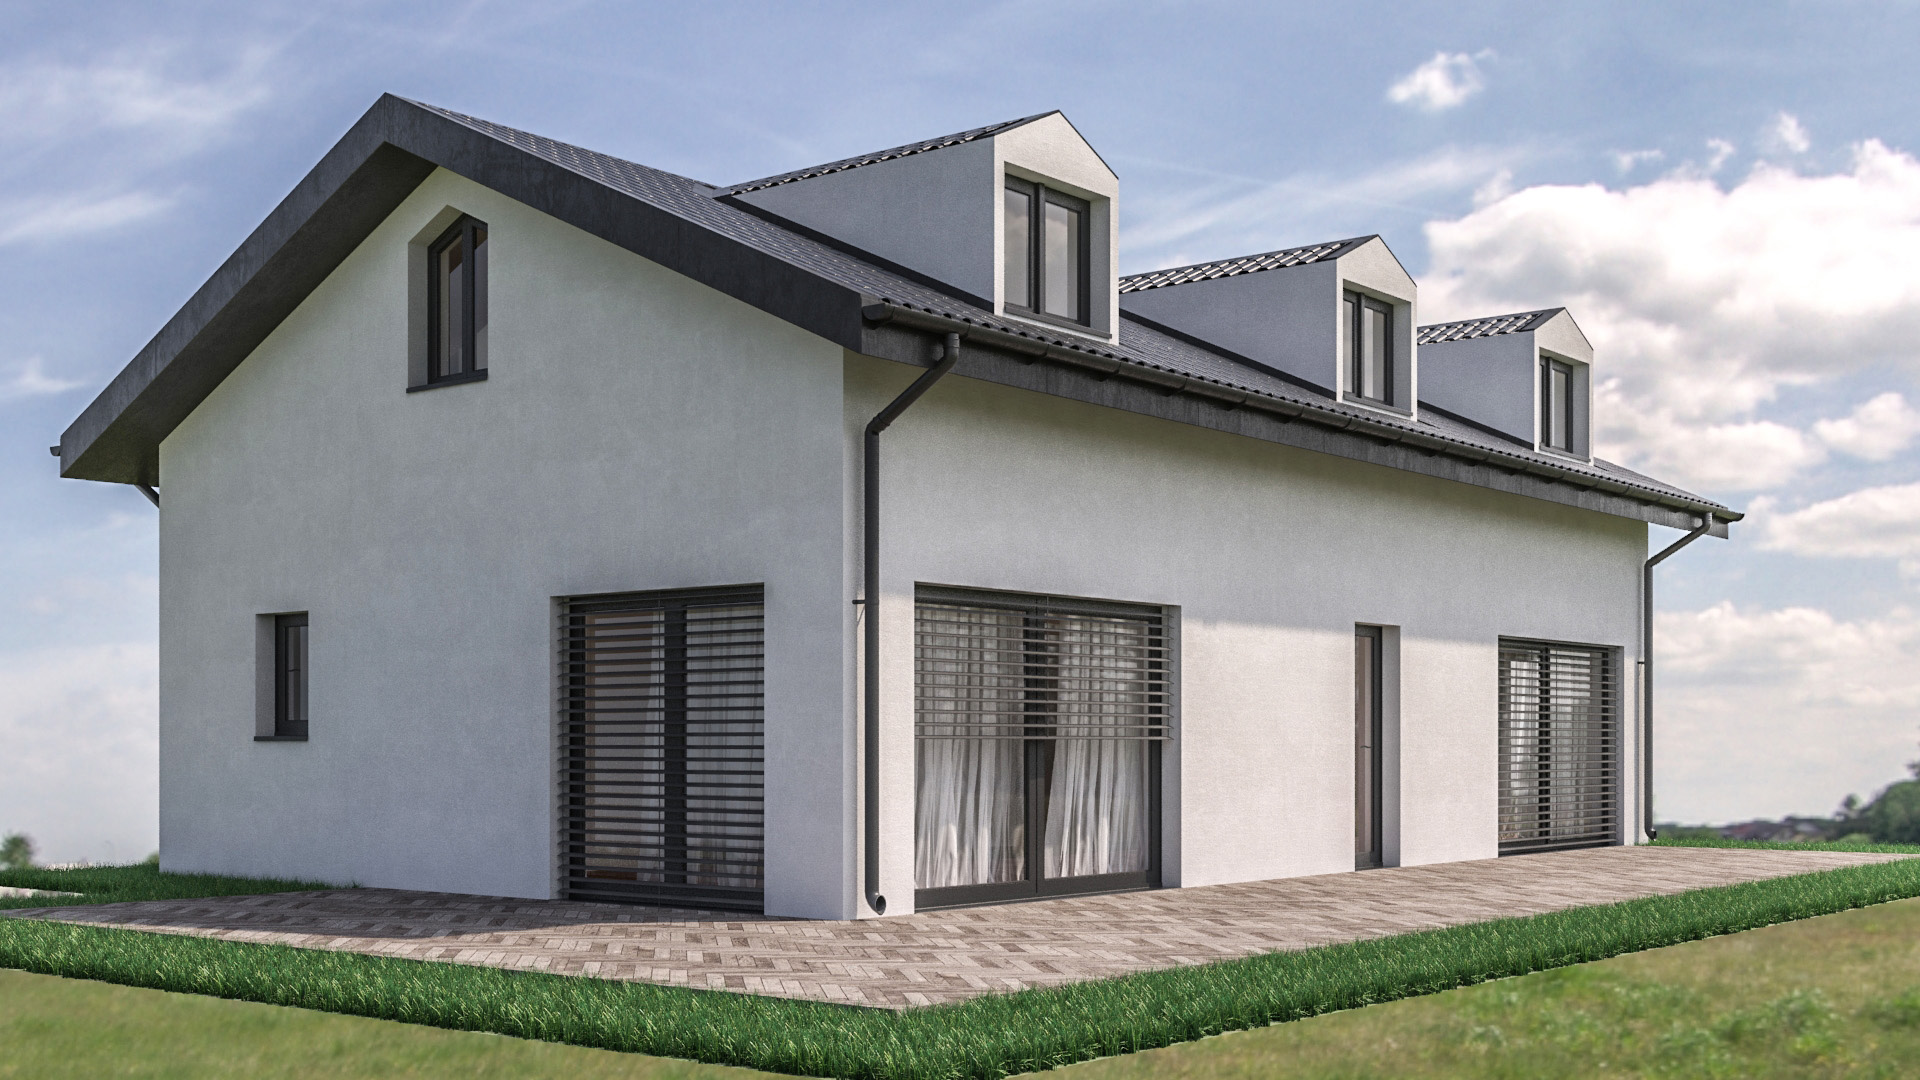 C3 Concept, visualisation 3D à Bulle. cressier villa individuelle extérieur